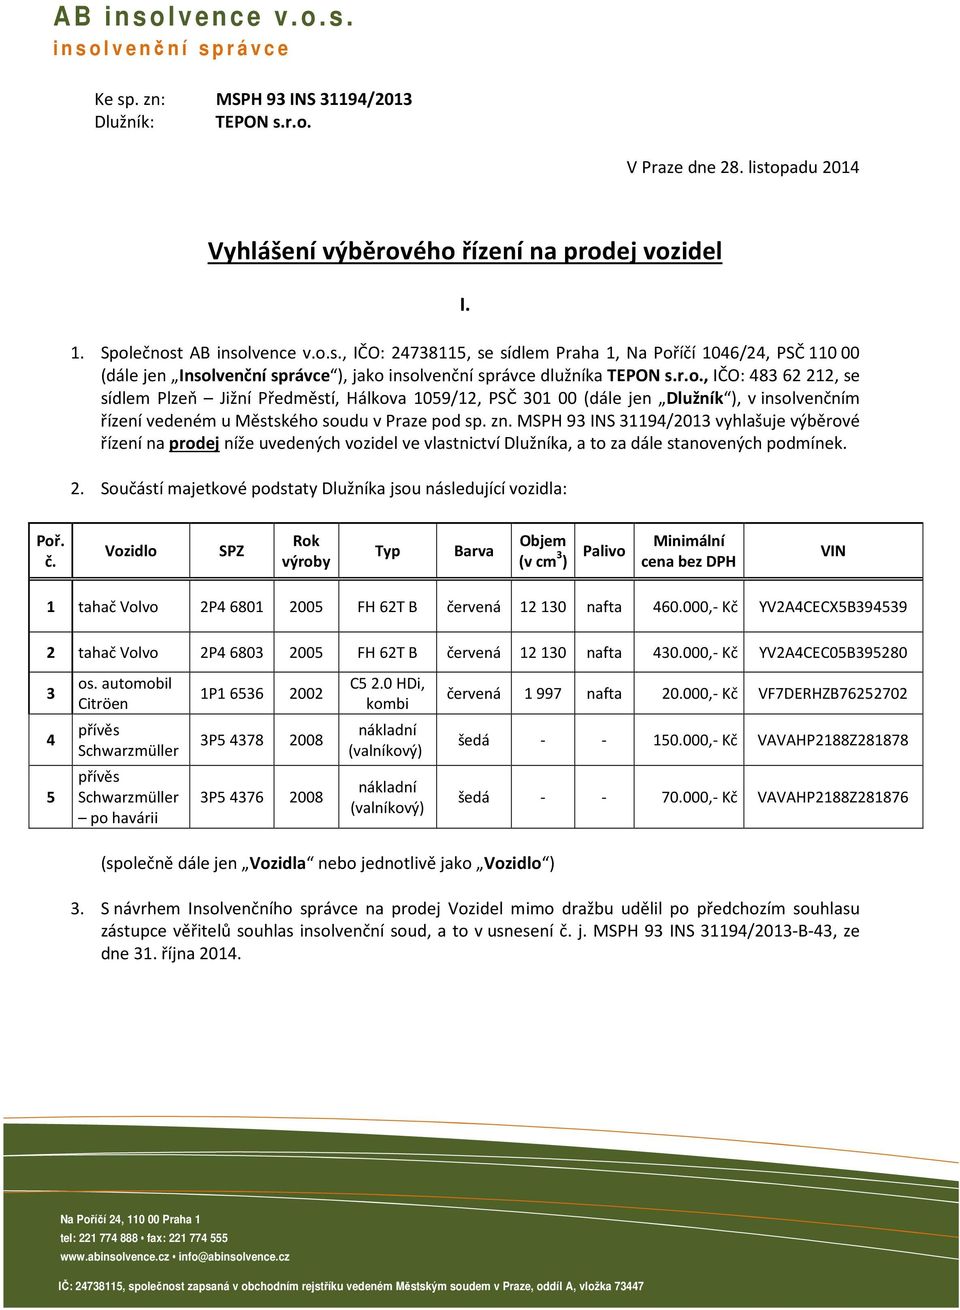 zn. MSPH 93 INS 31194/2013 vyhlašuje výběrové řízení na prodej níže uvedených vozidel ve vlastnictví Dlužníka, a to za dále stanovených podmínek. 2.